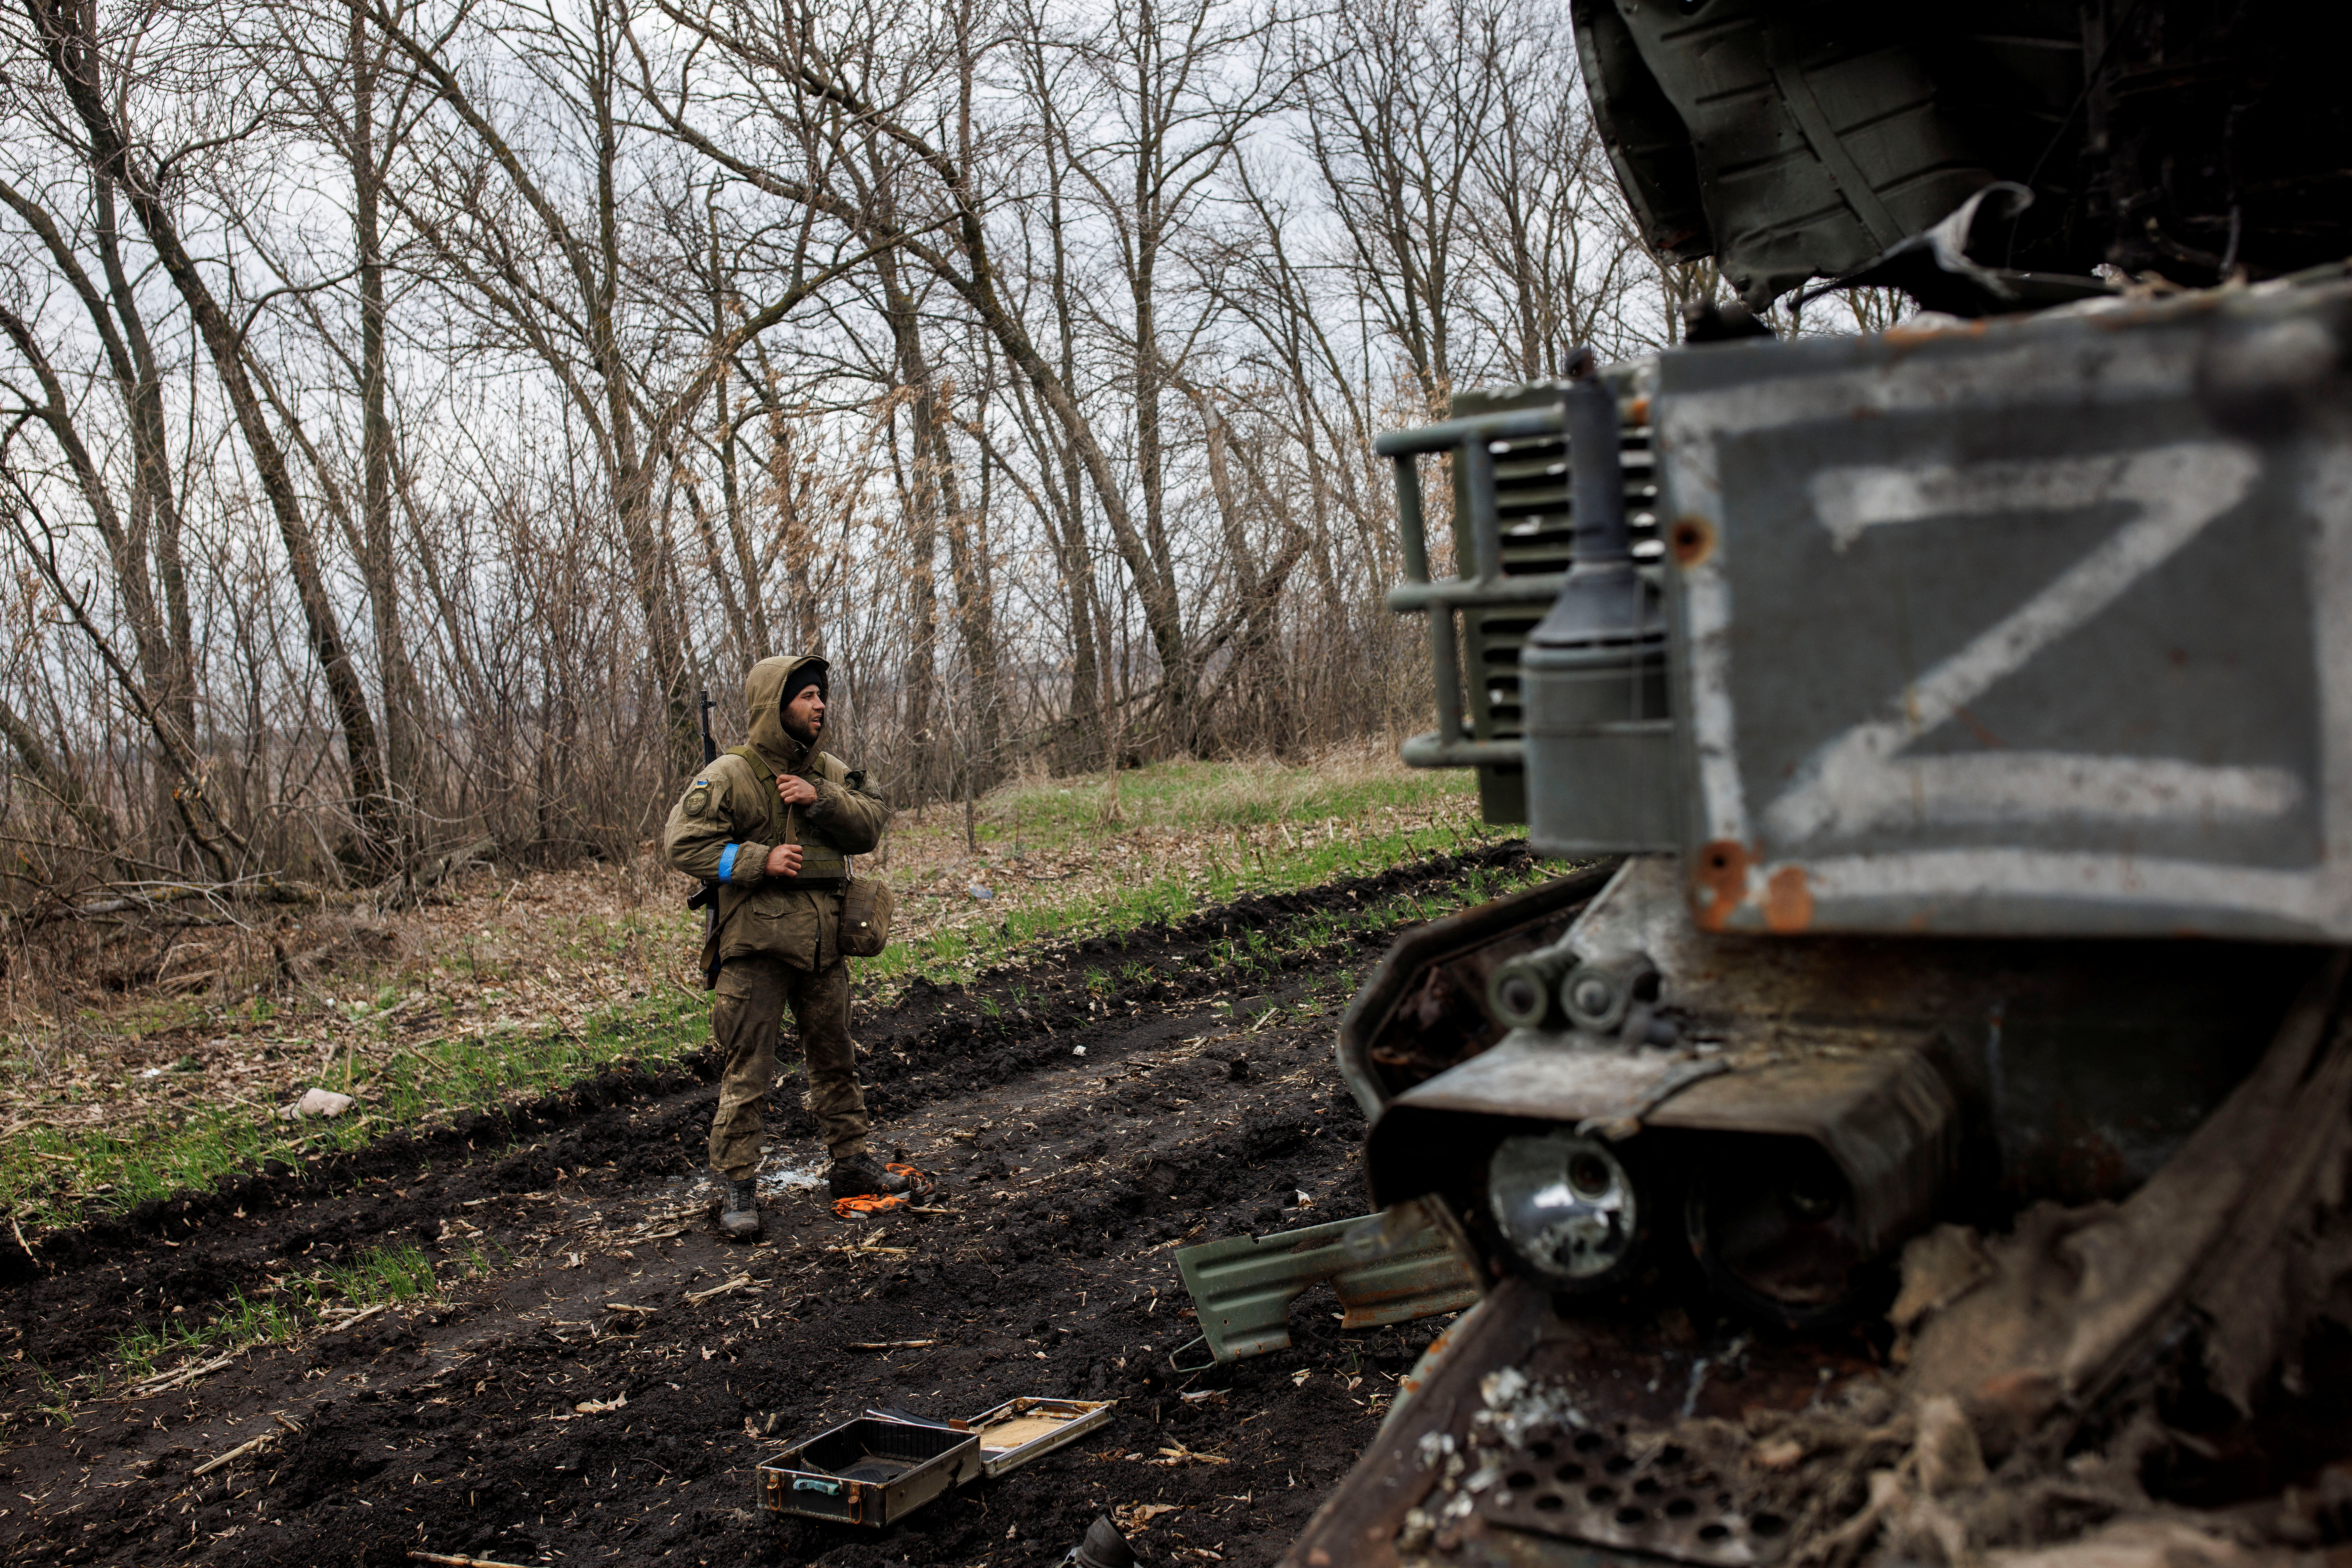 Un soldado ucraniano junto a un sistema de misiles antiaéreos rusos destruido, marcado con el símbolo "Z", en medio del ataque de Rusia a Ucrania, en la aldea de Husarivka, en la región de Kharkiv, Ucrania, el 14 de abril de 2022. Imagen tomada el 14 de abril de 2022. REUTERS/Alkis Konstantinidis